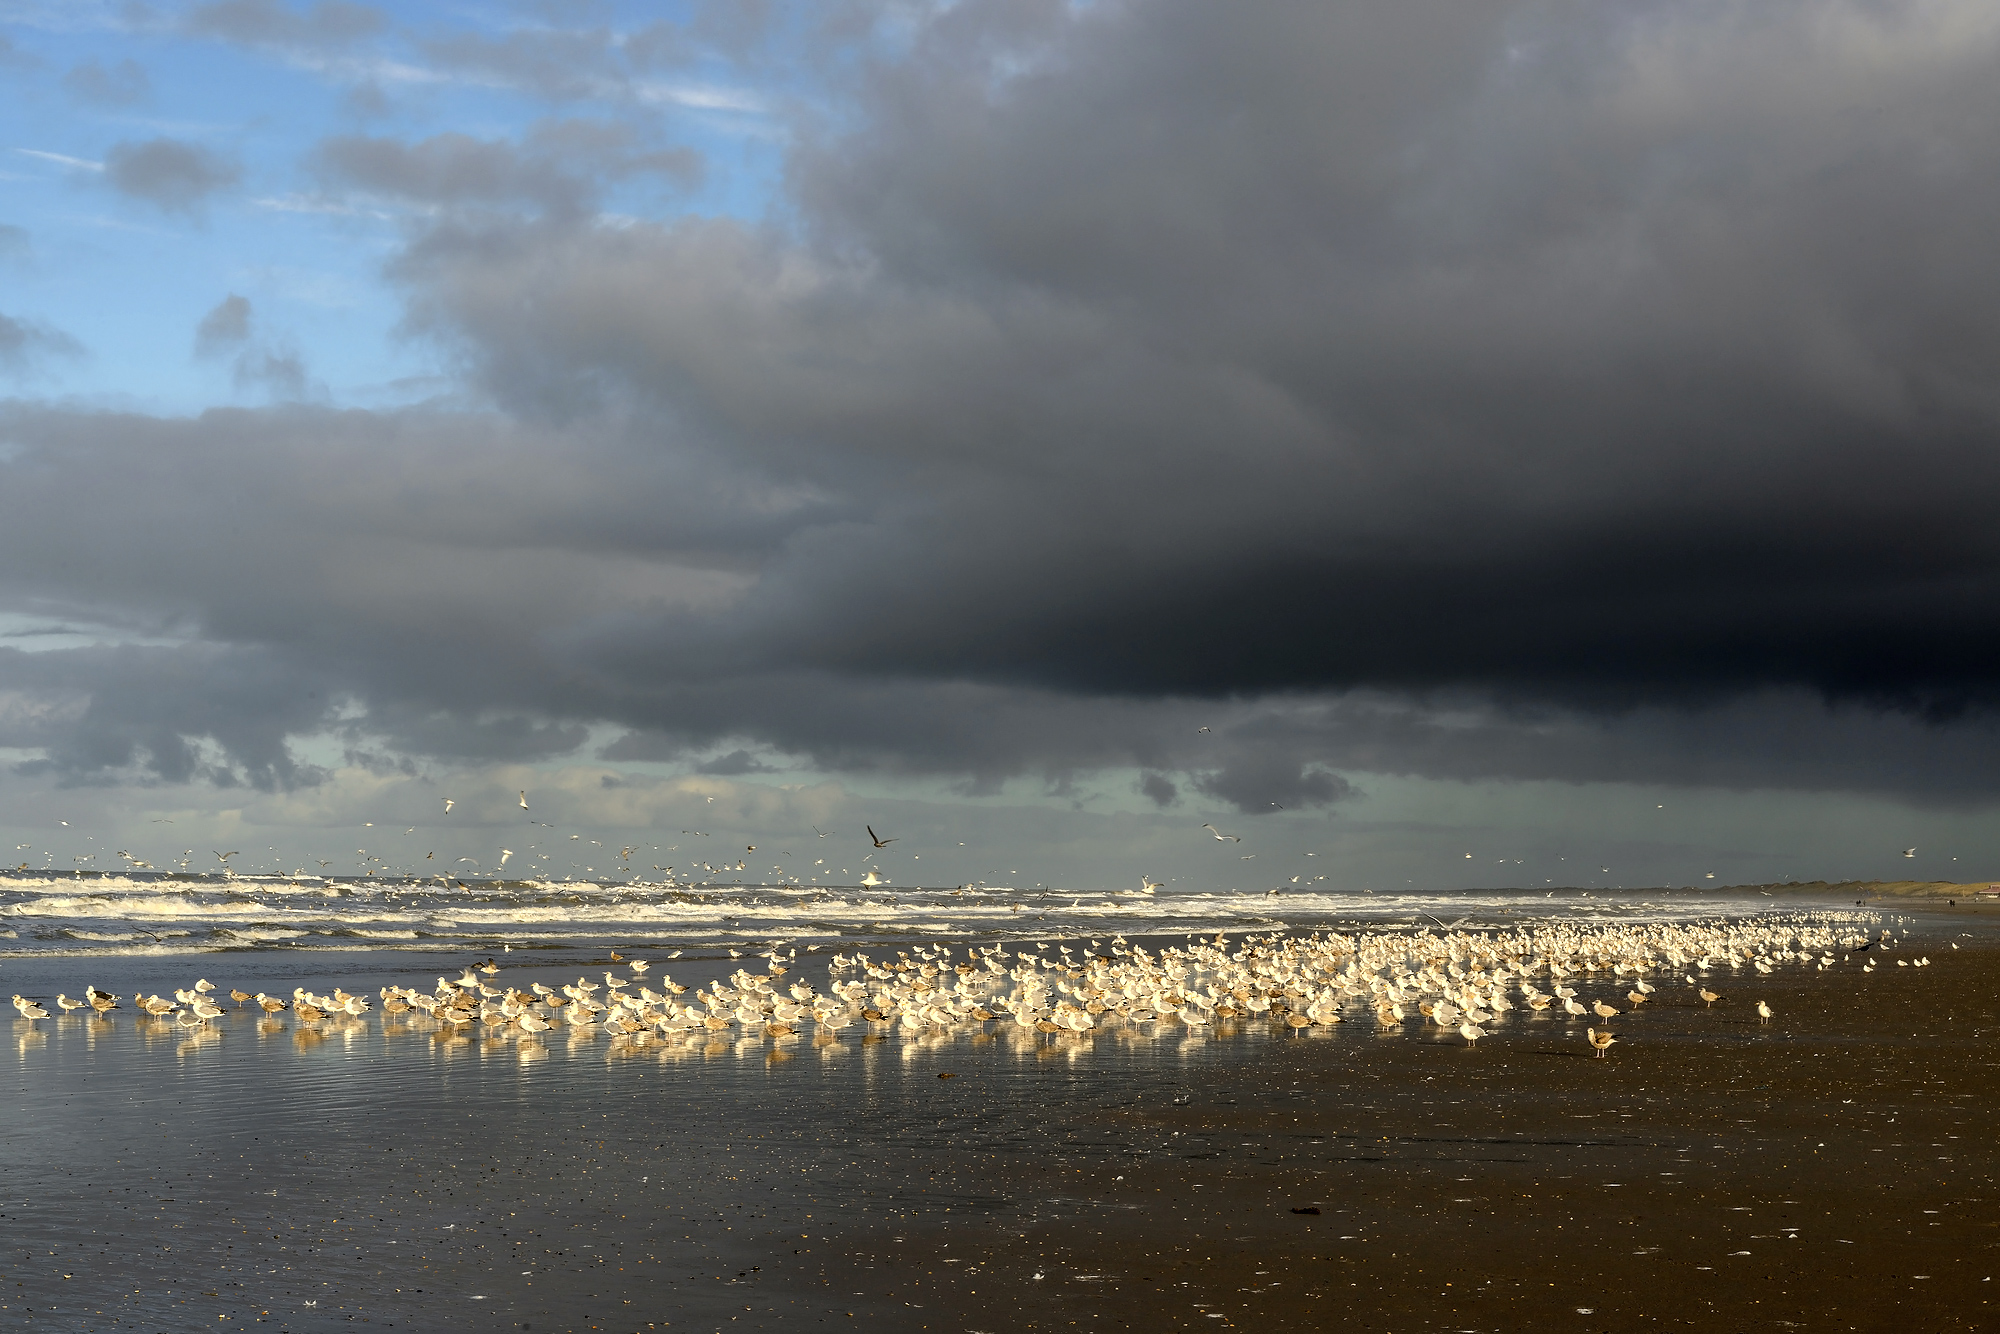 Donkere wolken van naderende regenbui boven grote groep rustende meeuwen langs de vloedlijn op het strand van Wijk aan Zee